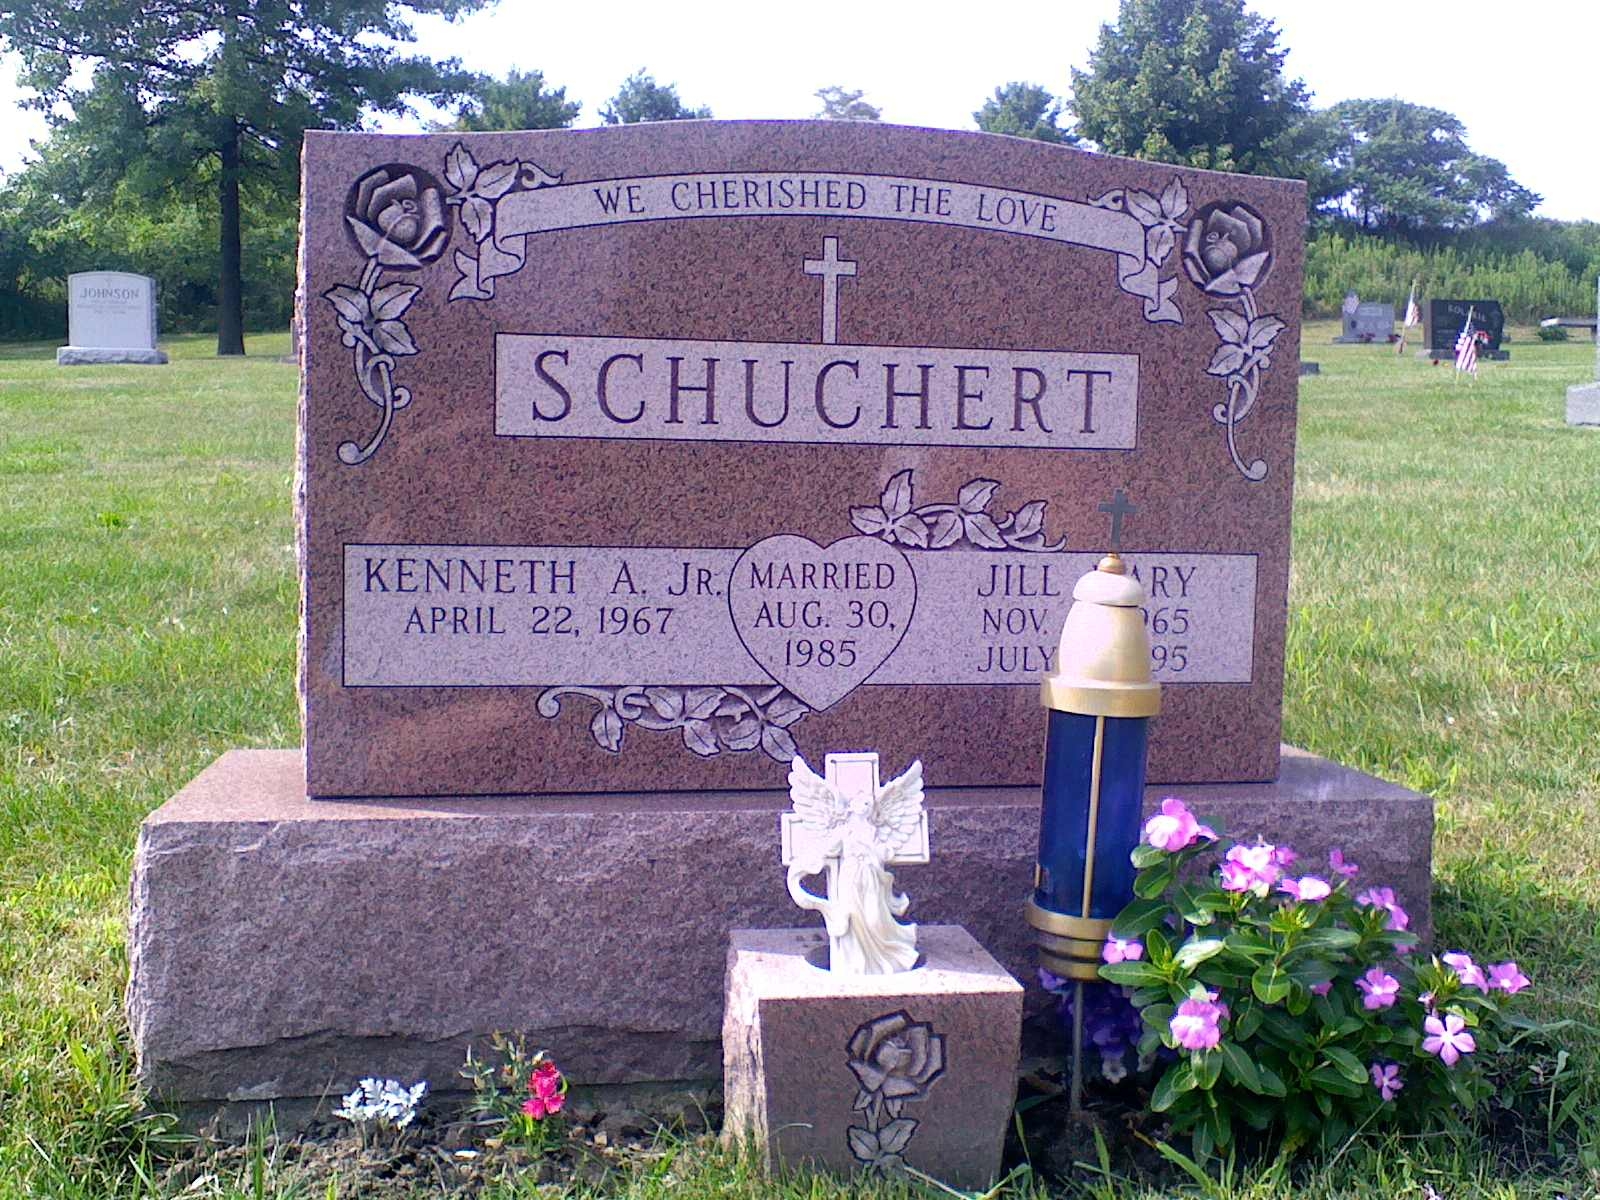 Jill Mary Schuchert gravesite